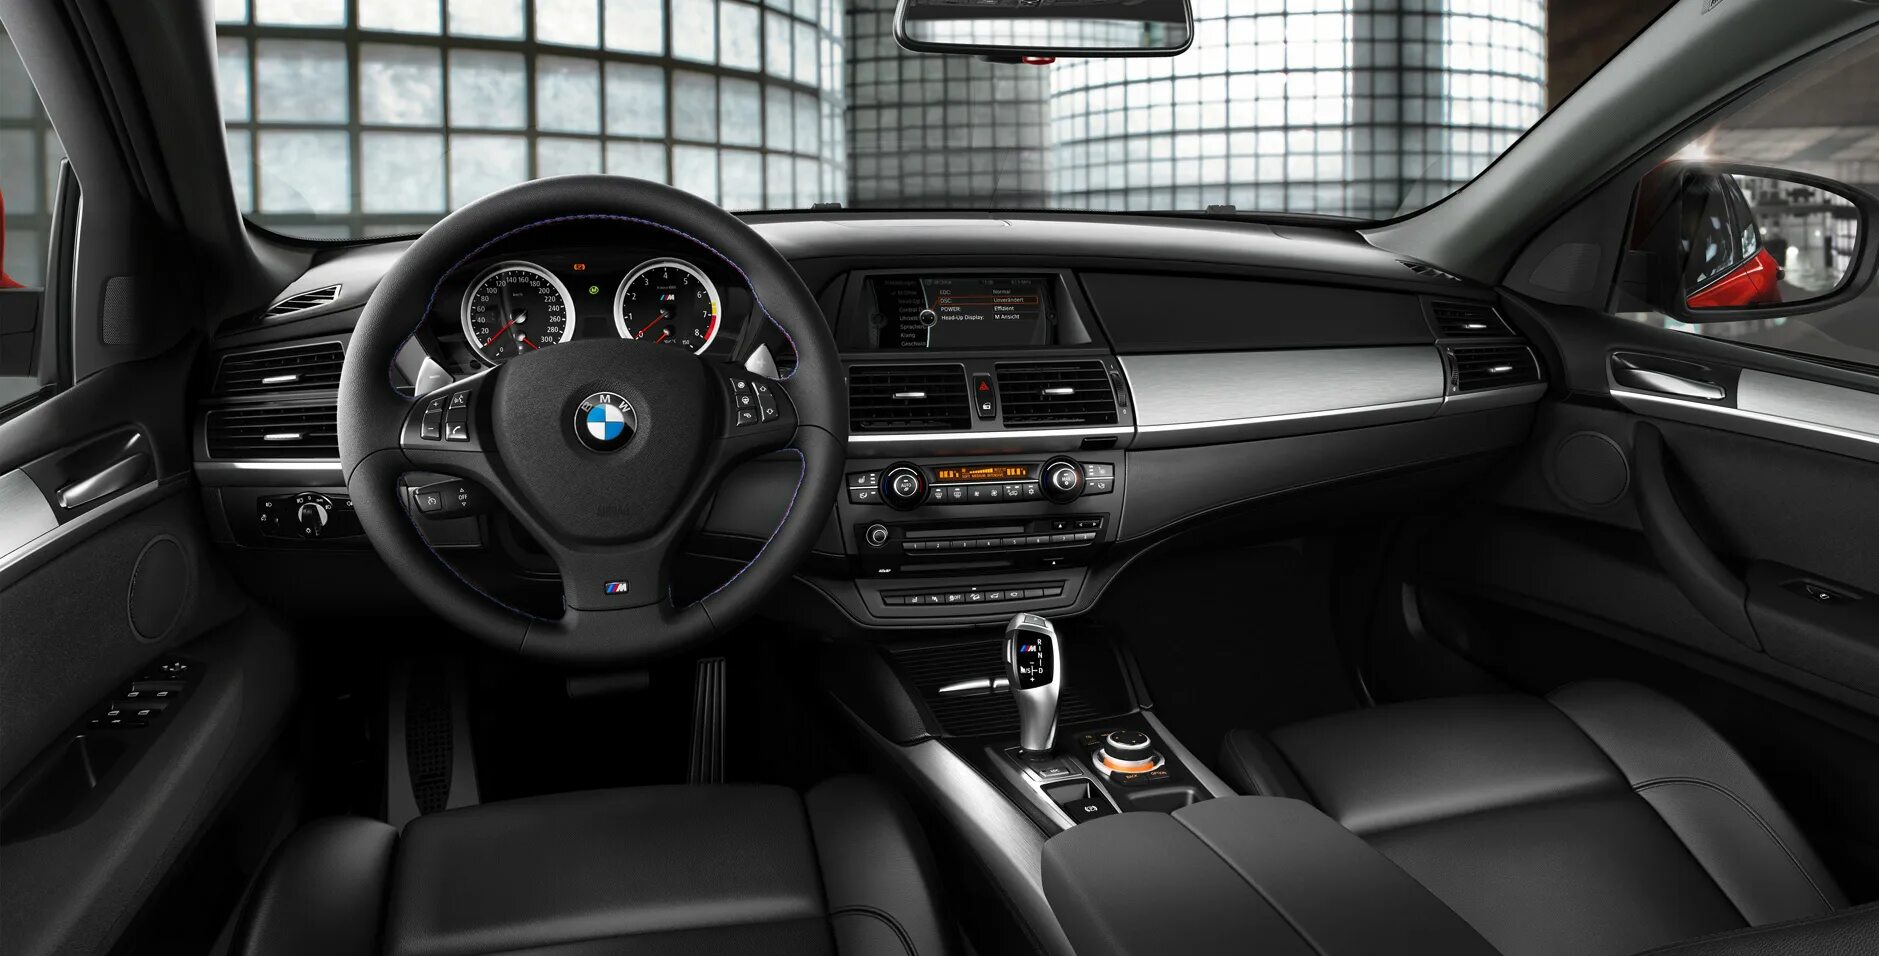 BMW x6 салон. BMW e71 x6m салон. BMW x6 салон черный. X6m 2013 салон.